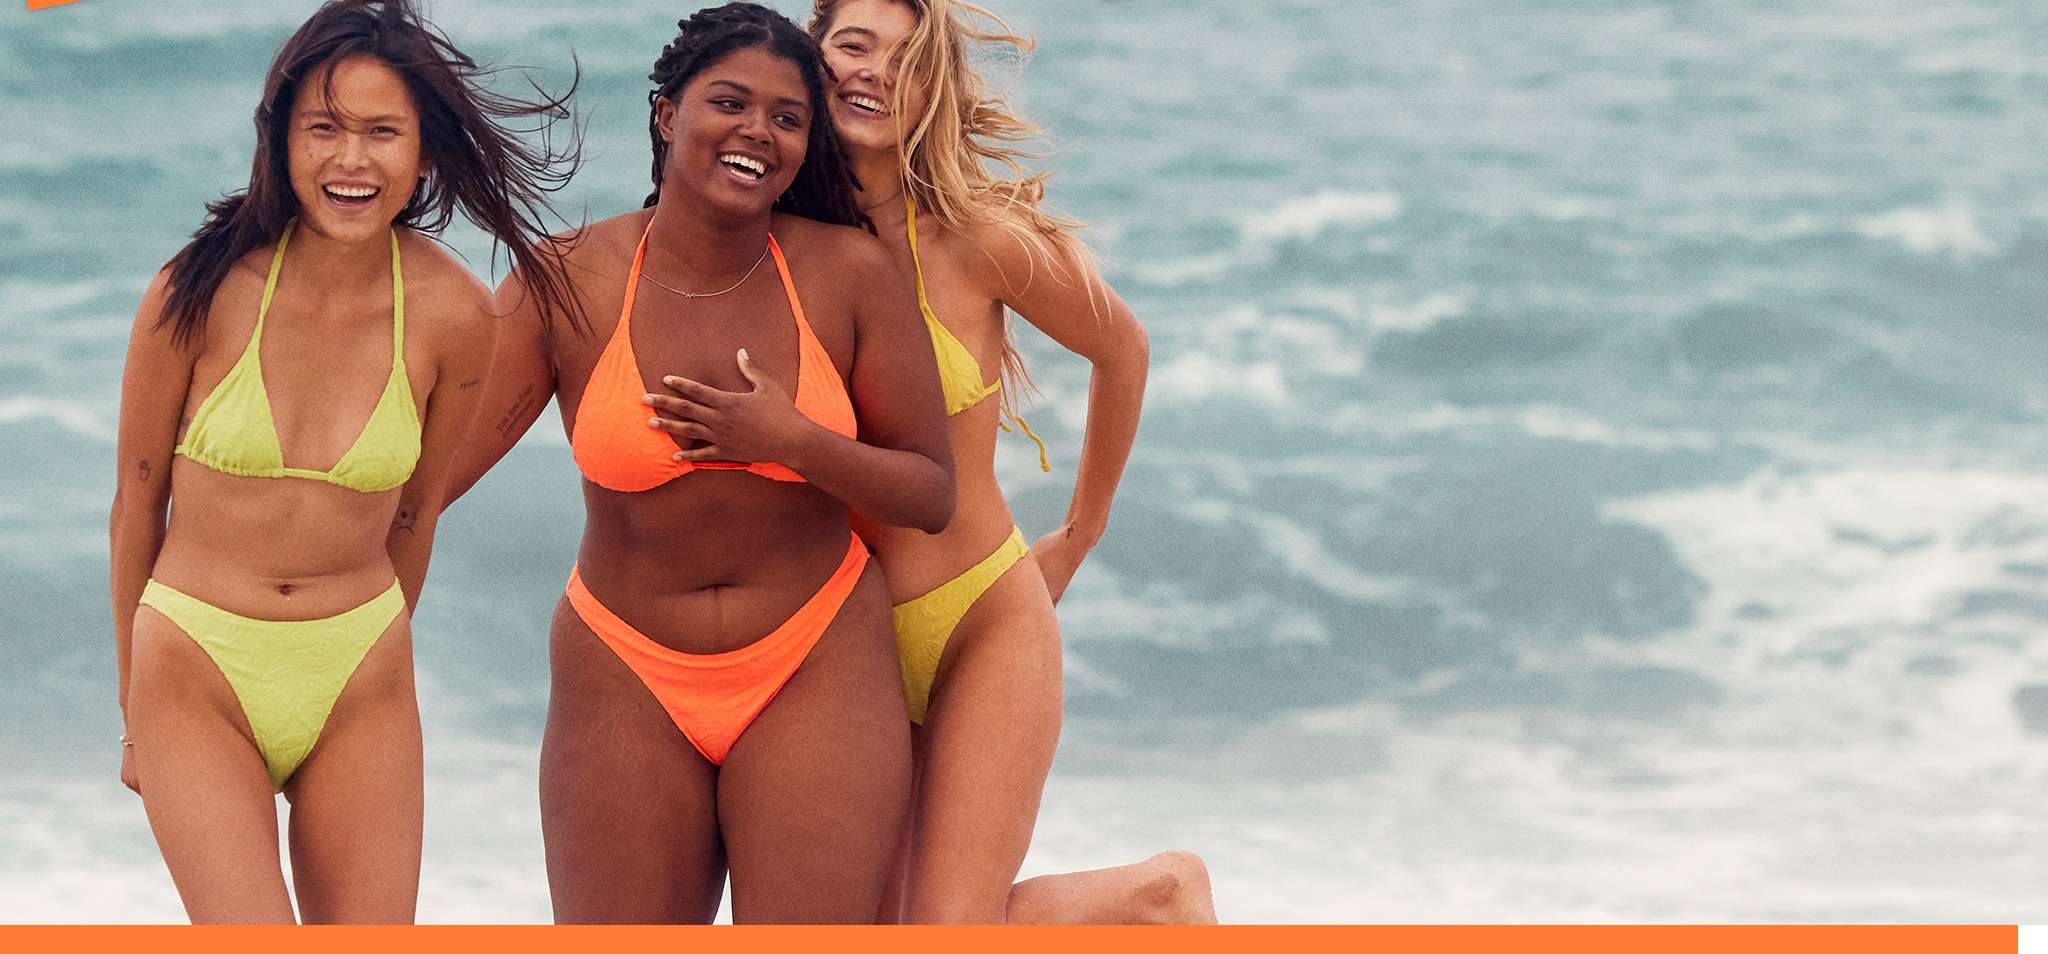 three women on beach wearing orange and yellow bikinis